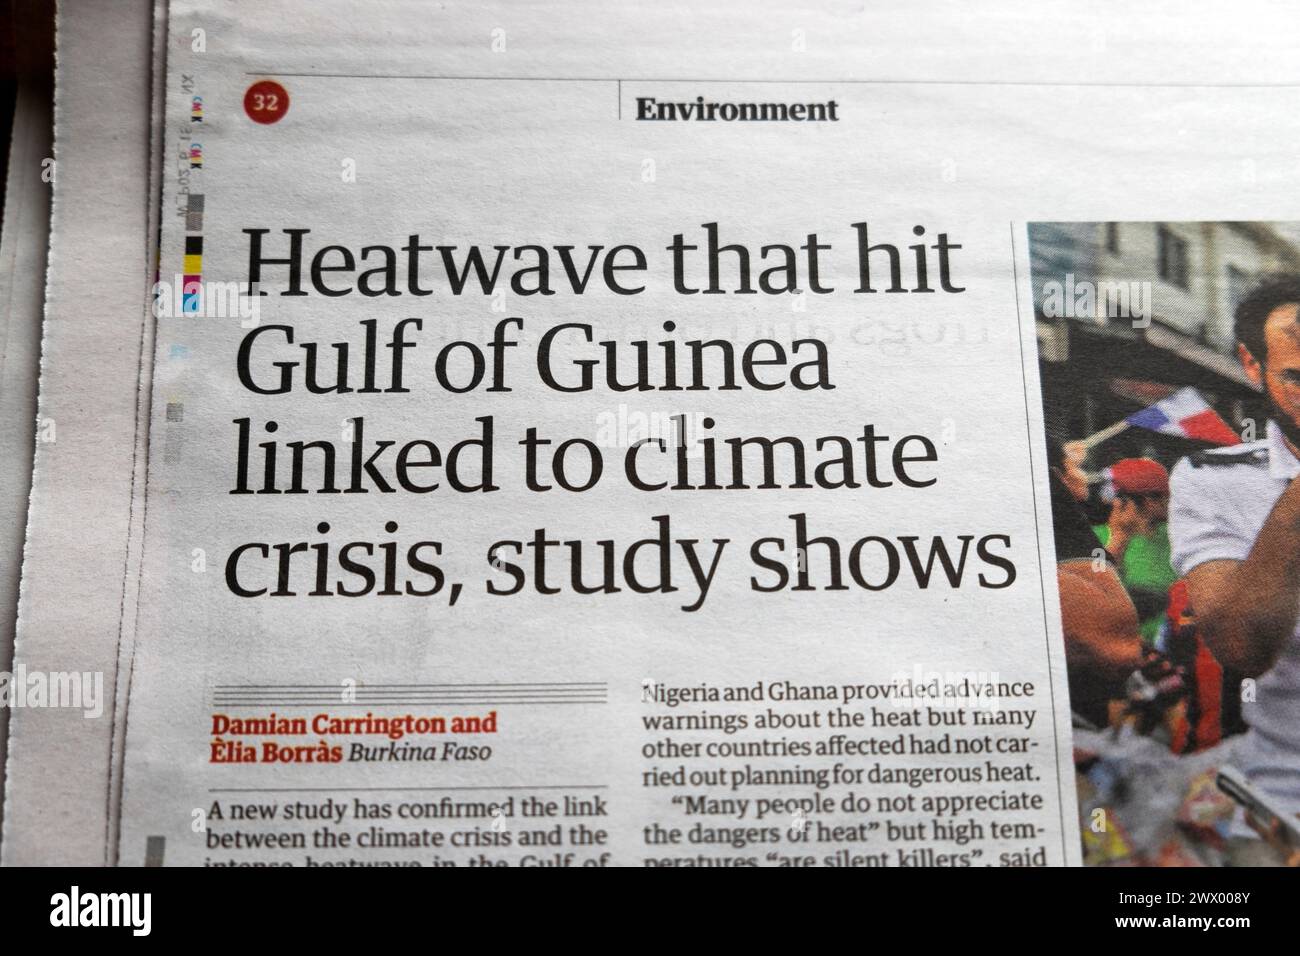 "L'ondata di caldo che ha colpito il Golfo di Guinea legata alla crisi climatica, lo studio mostra" articolo del quotidiano Guardian sull'ambiente 23 marzo 2024 Londra Regno Unito Foto Stock